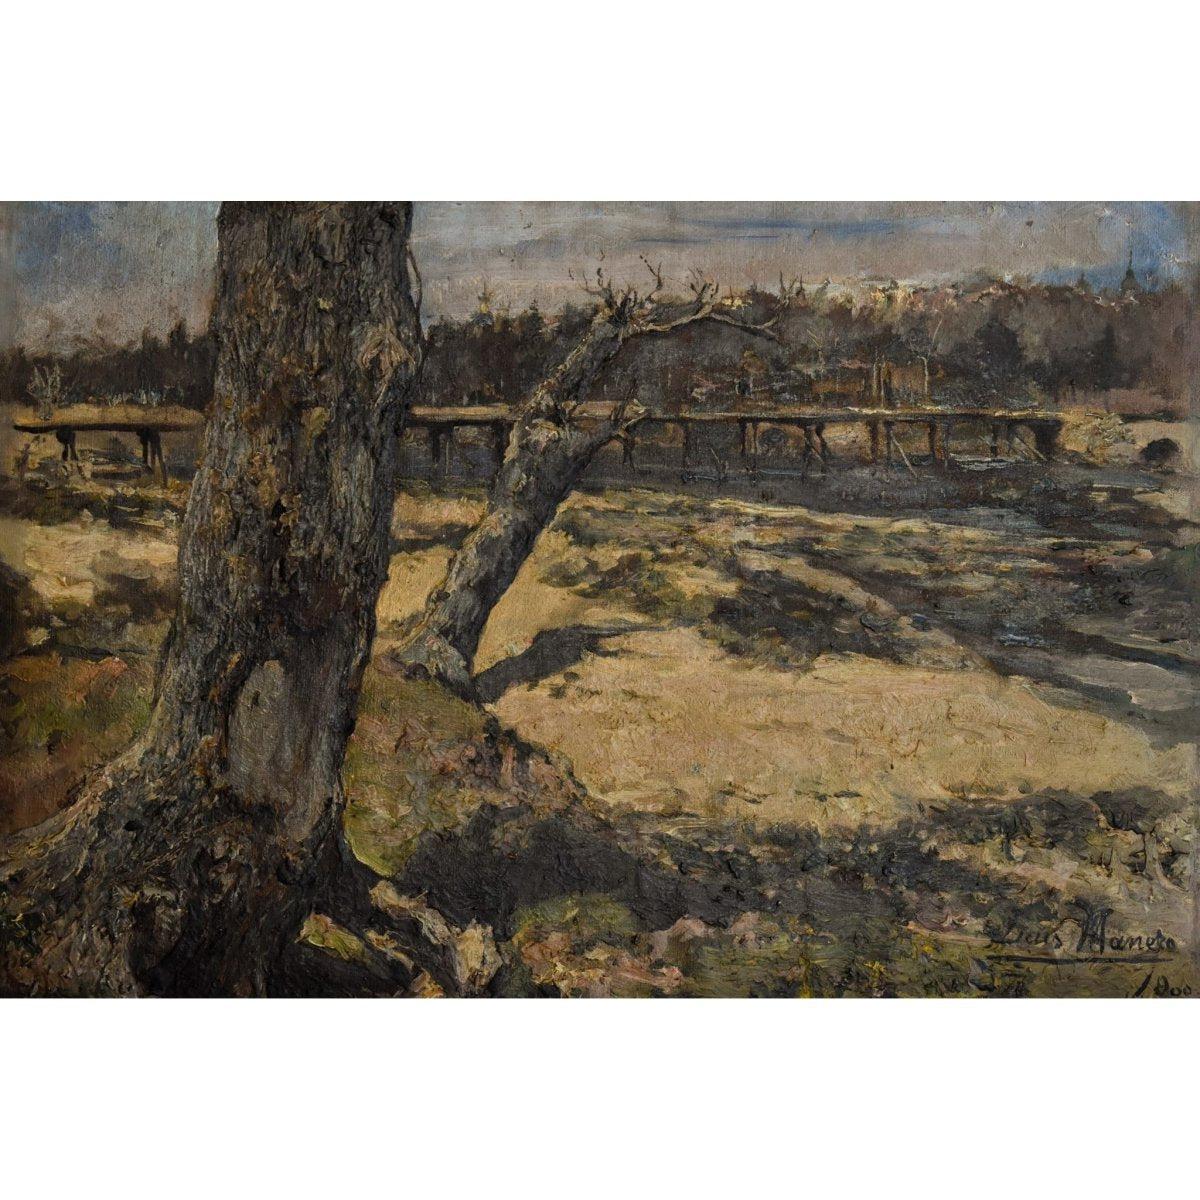 Luis Manero – Landscape with a Bridge - Winckelmann Gallery